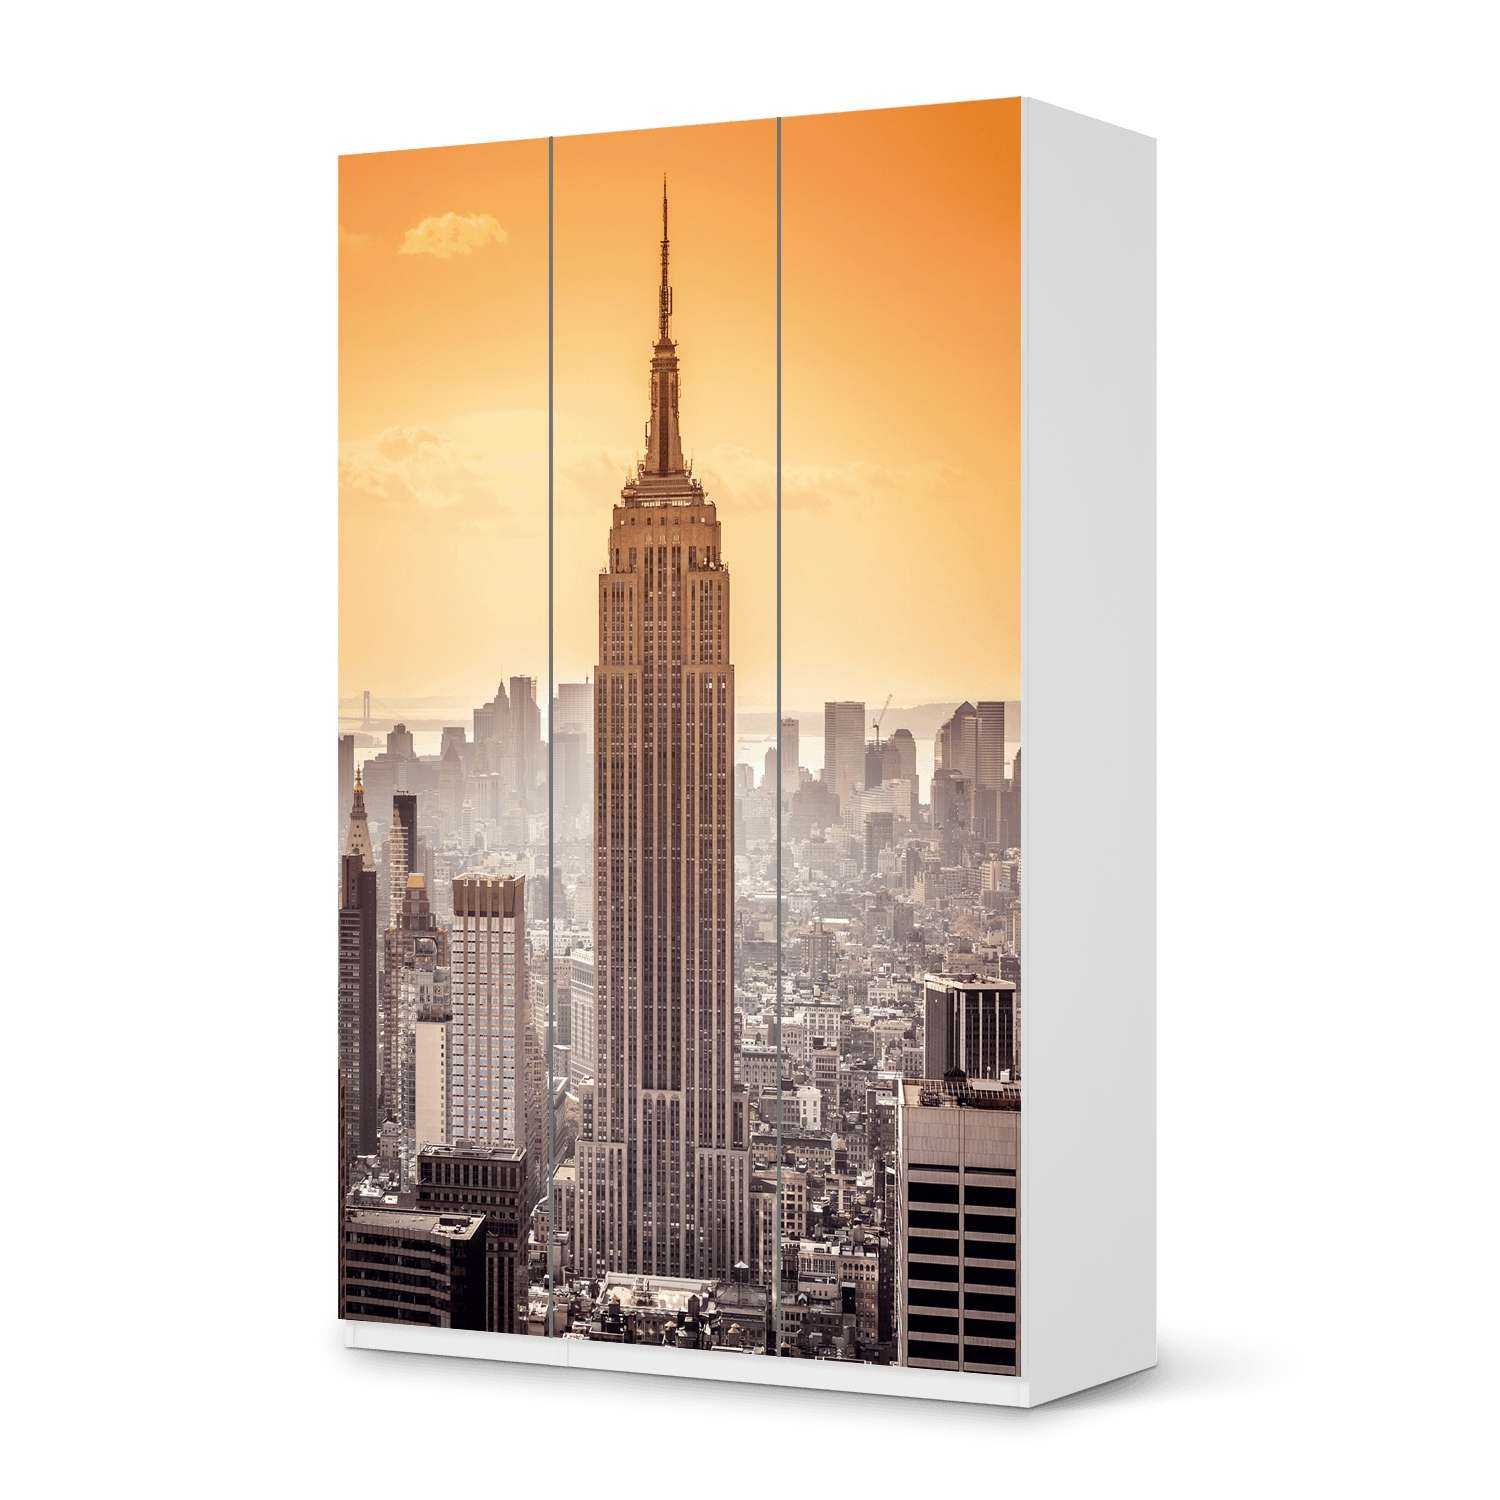 Selbstklebende Folie IKEA Pax Schrank 236 cm H?he - 3 T?ren - Design: Empire State Building von creatisto